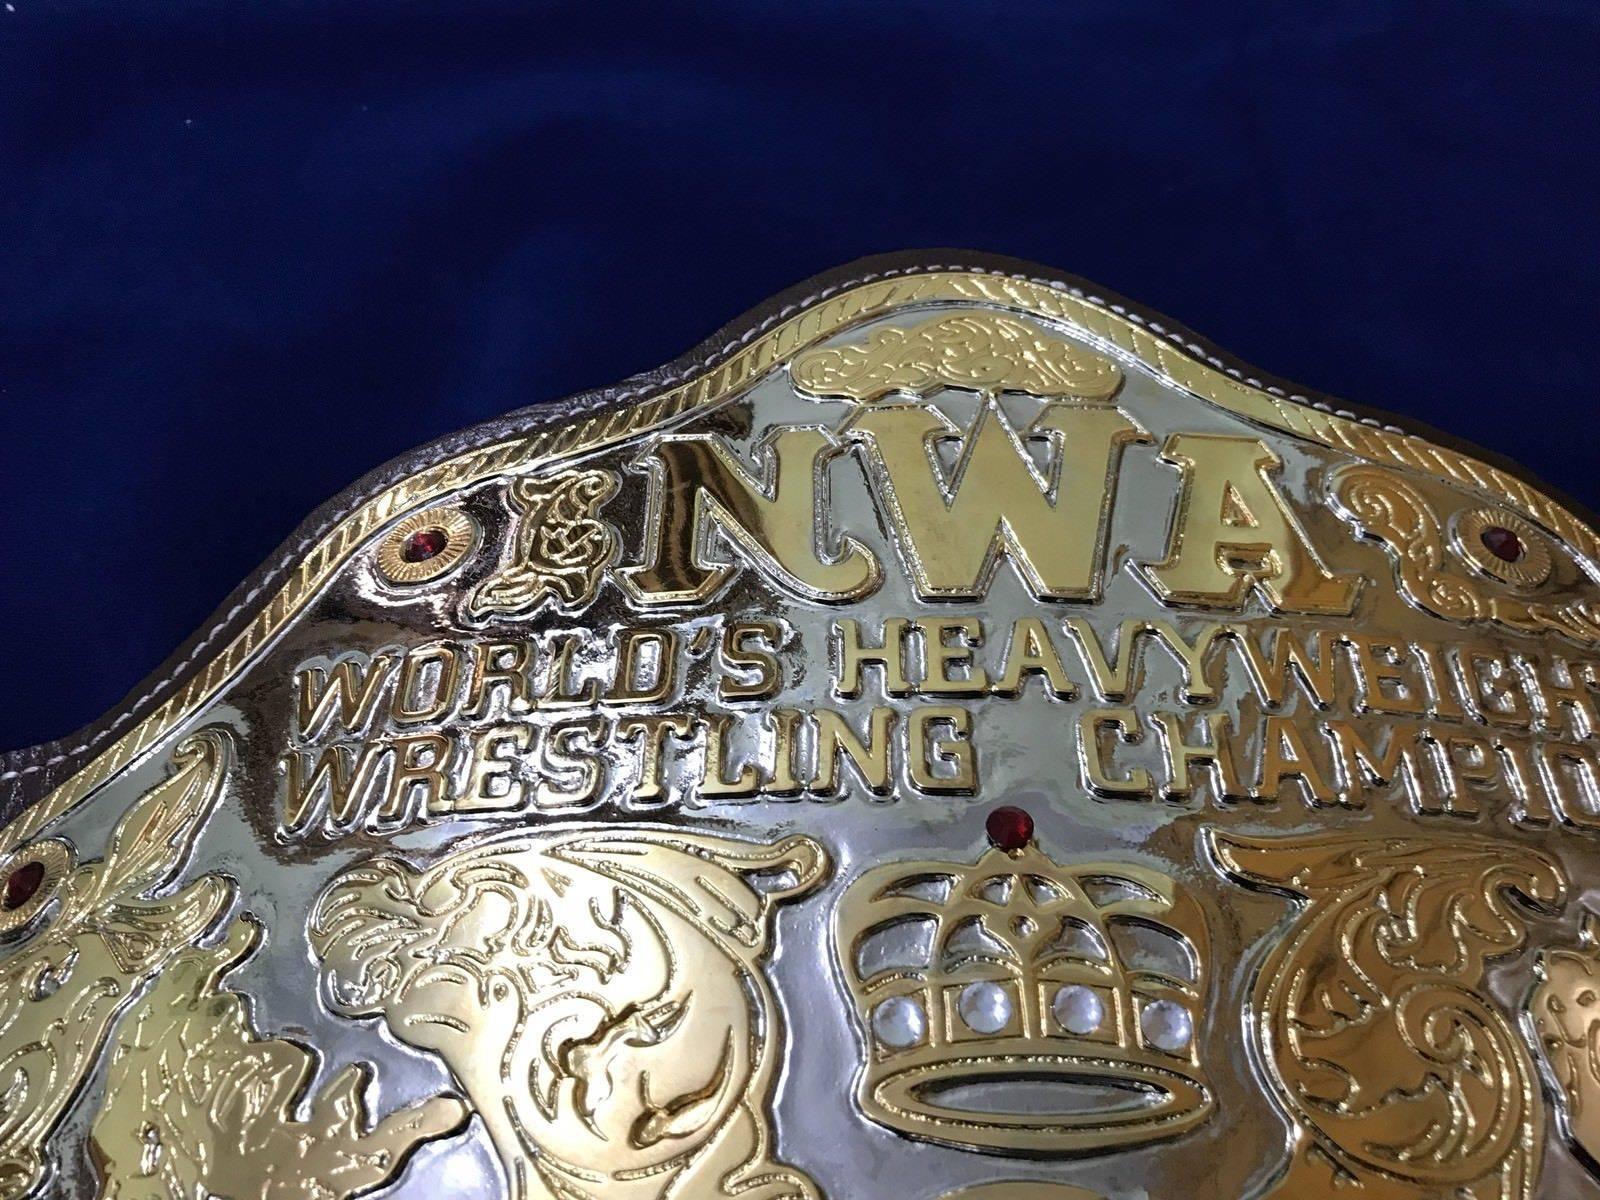 NWA BIG GOLD 24K GOLD Zinc Championship Belt